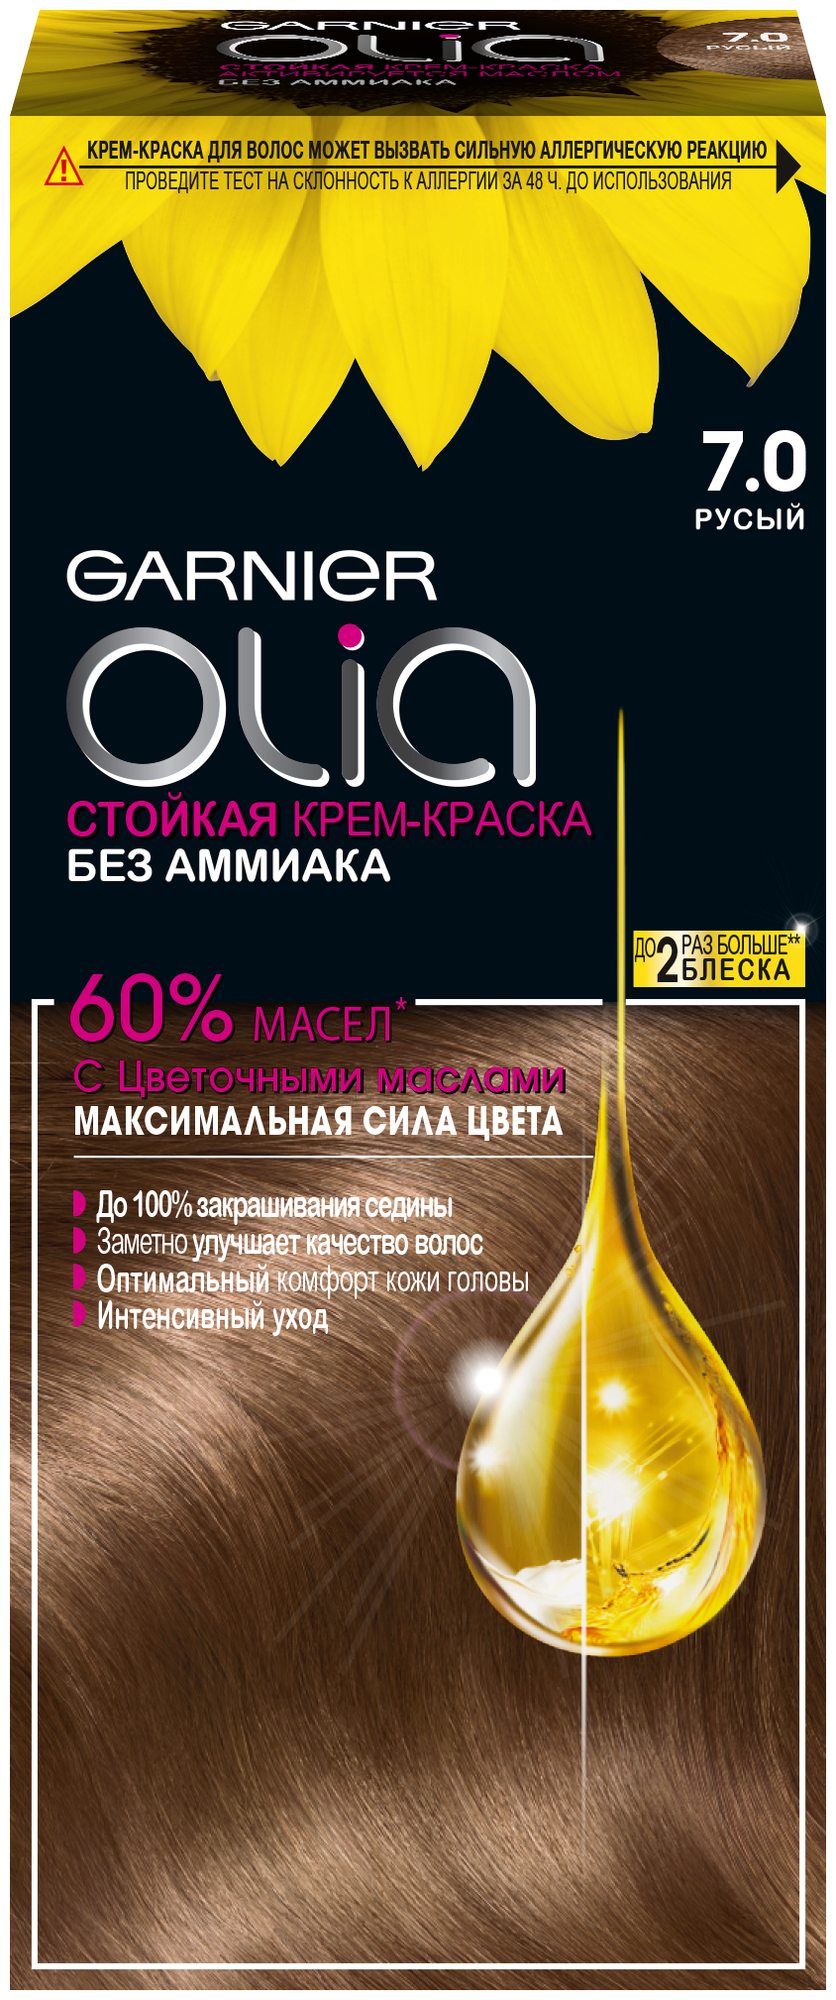 GARNIER Olia стойкая крем-краска для волос, 7.0 русый, 112 мл